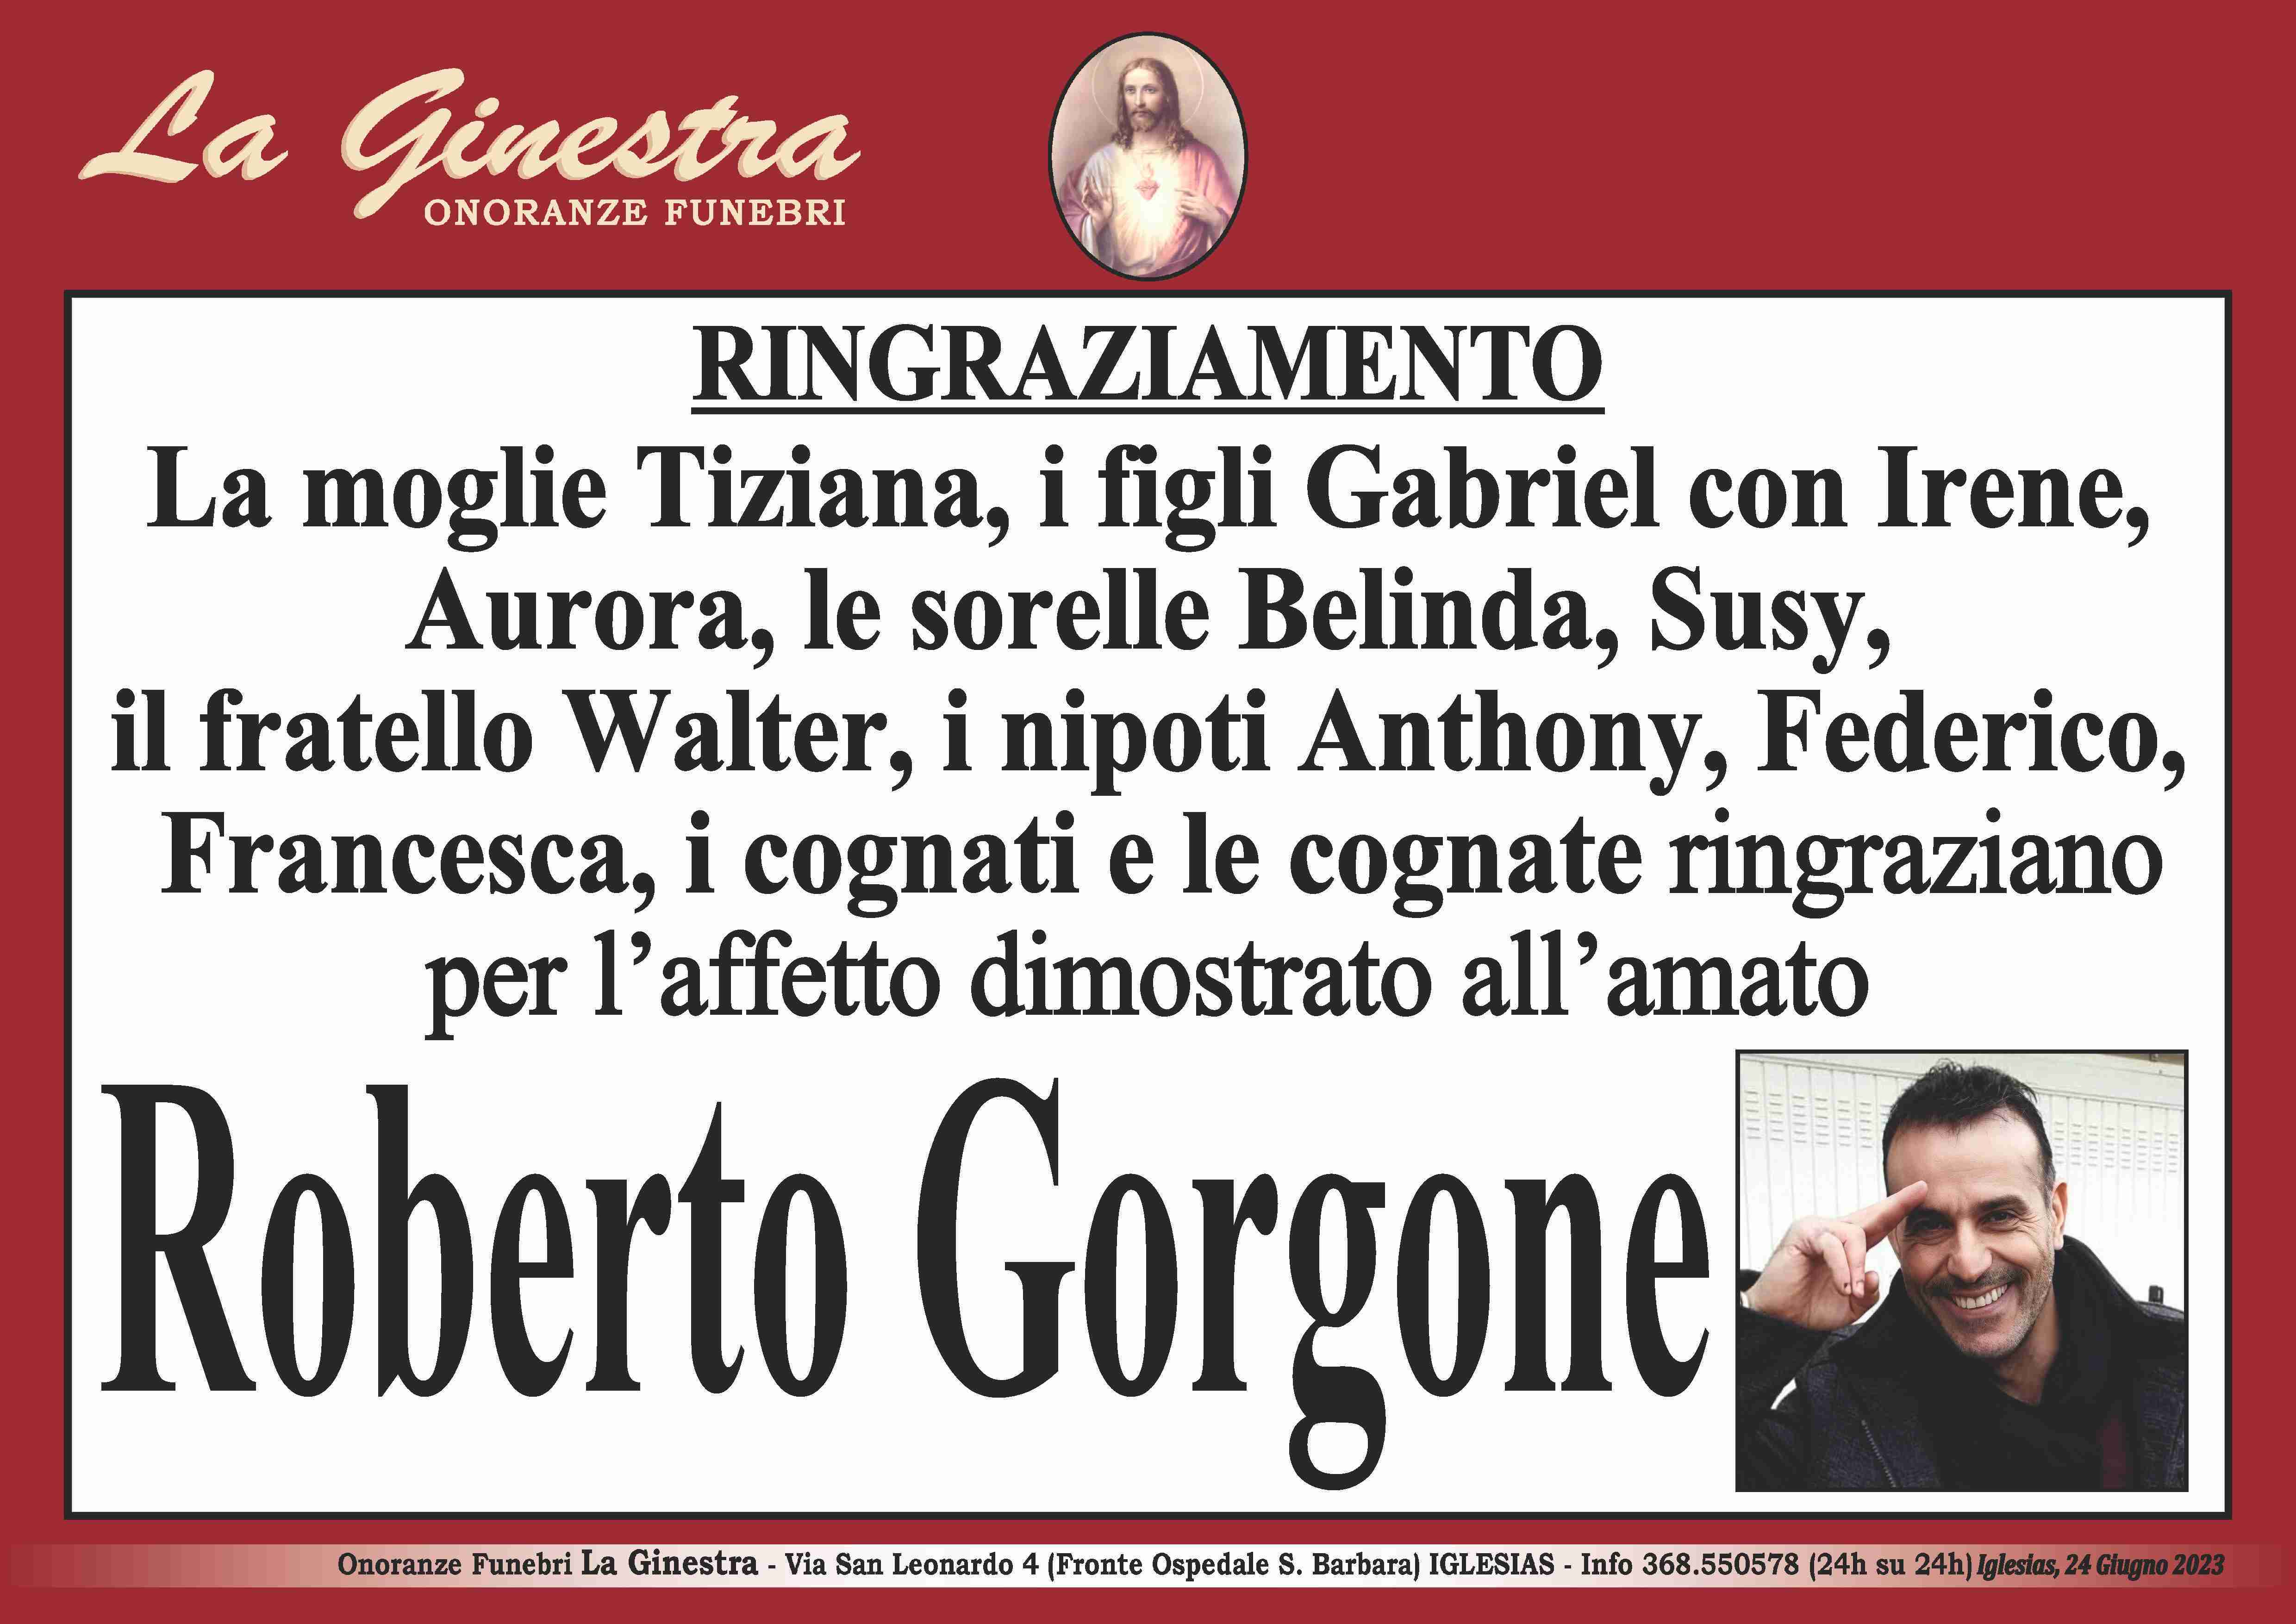 Roberto Gorgone